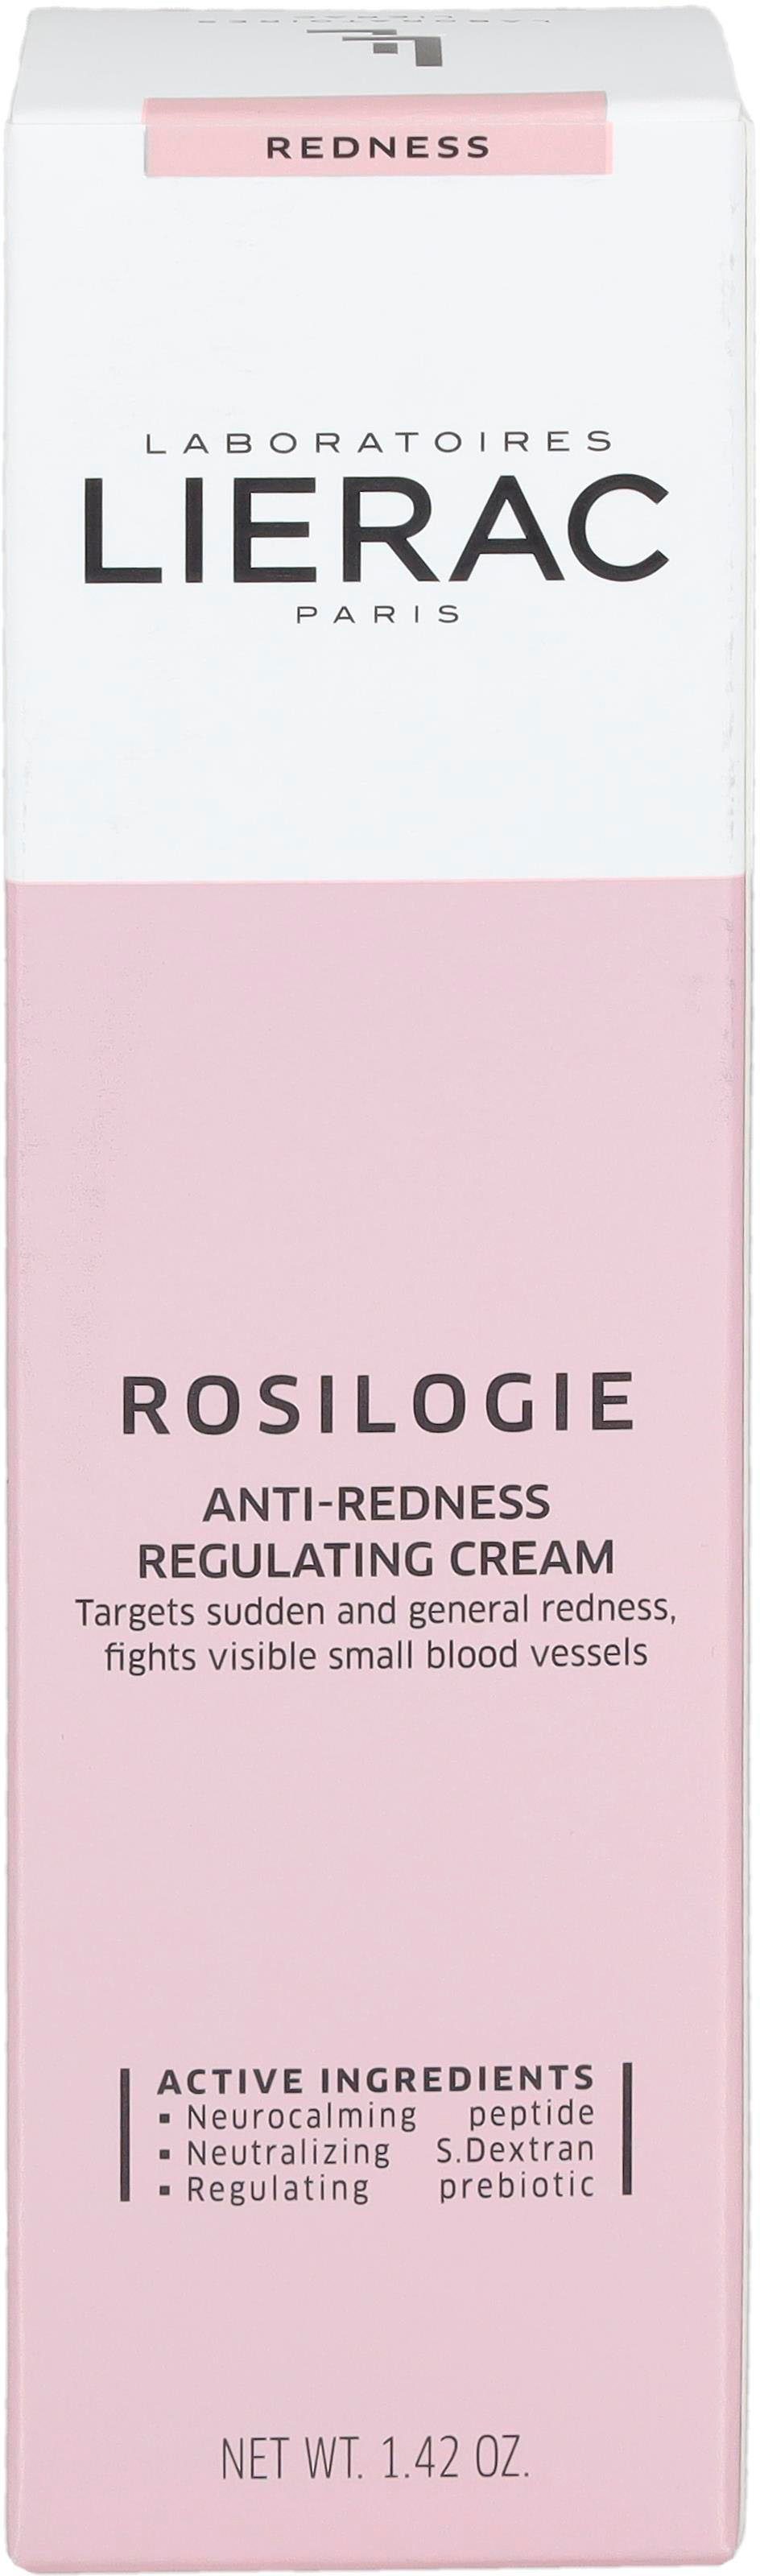 Rötungen Rosilogie LIERAC gegen Regulatrice Creme Gesichtspflege Anti-Rougeurs,